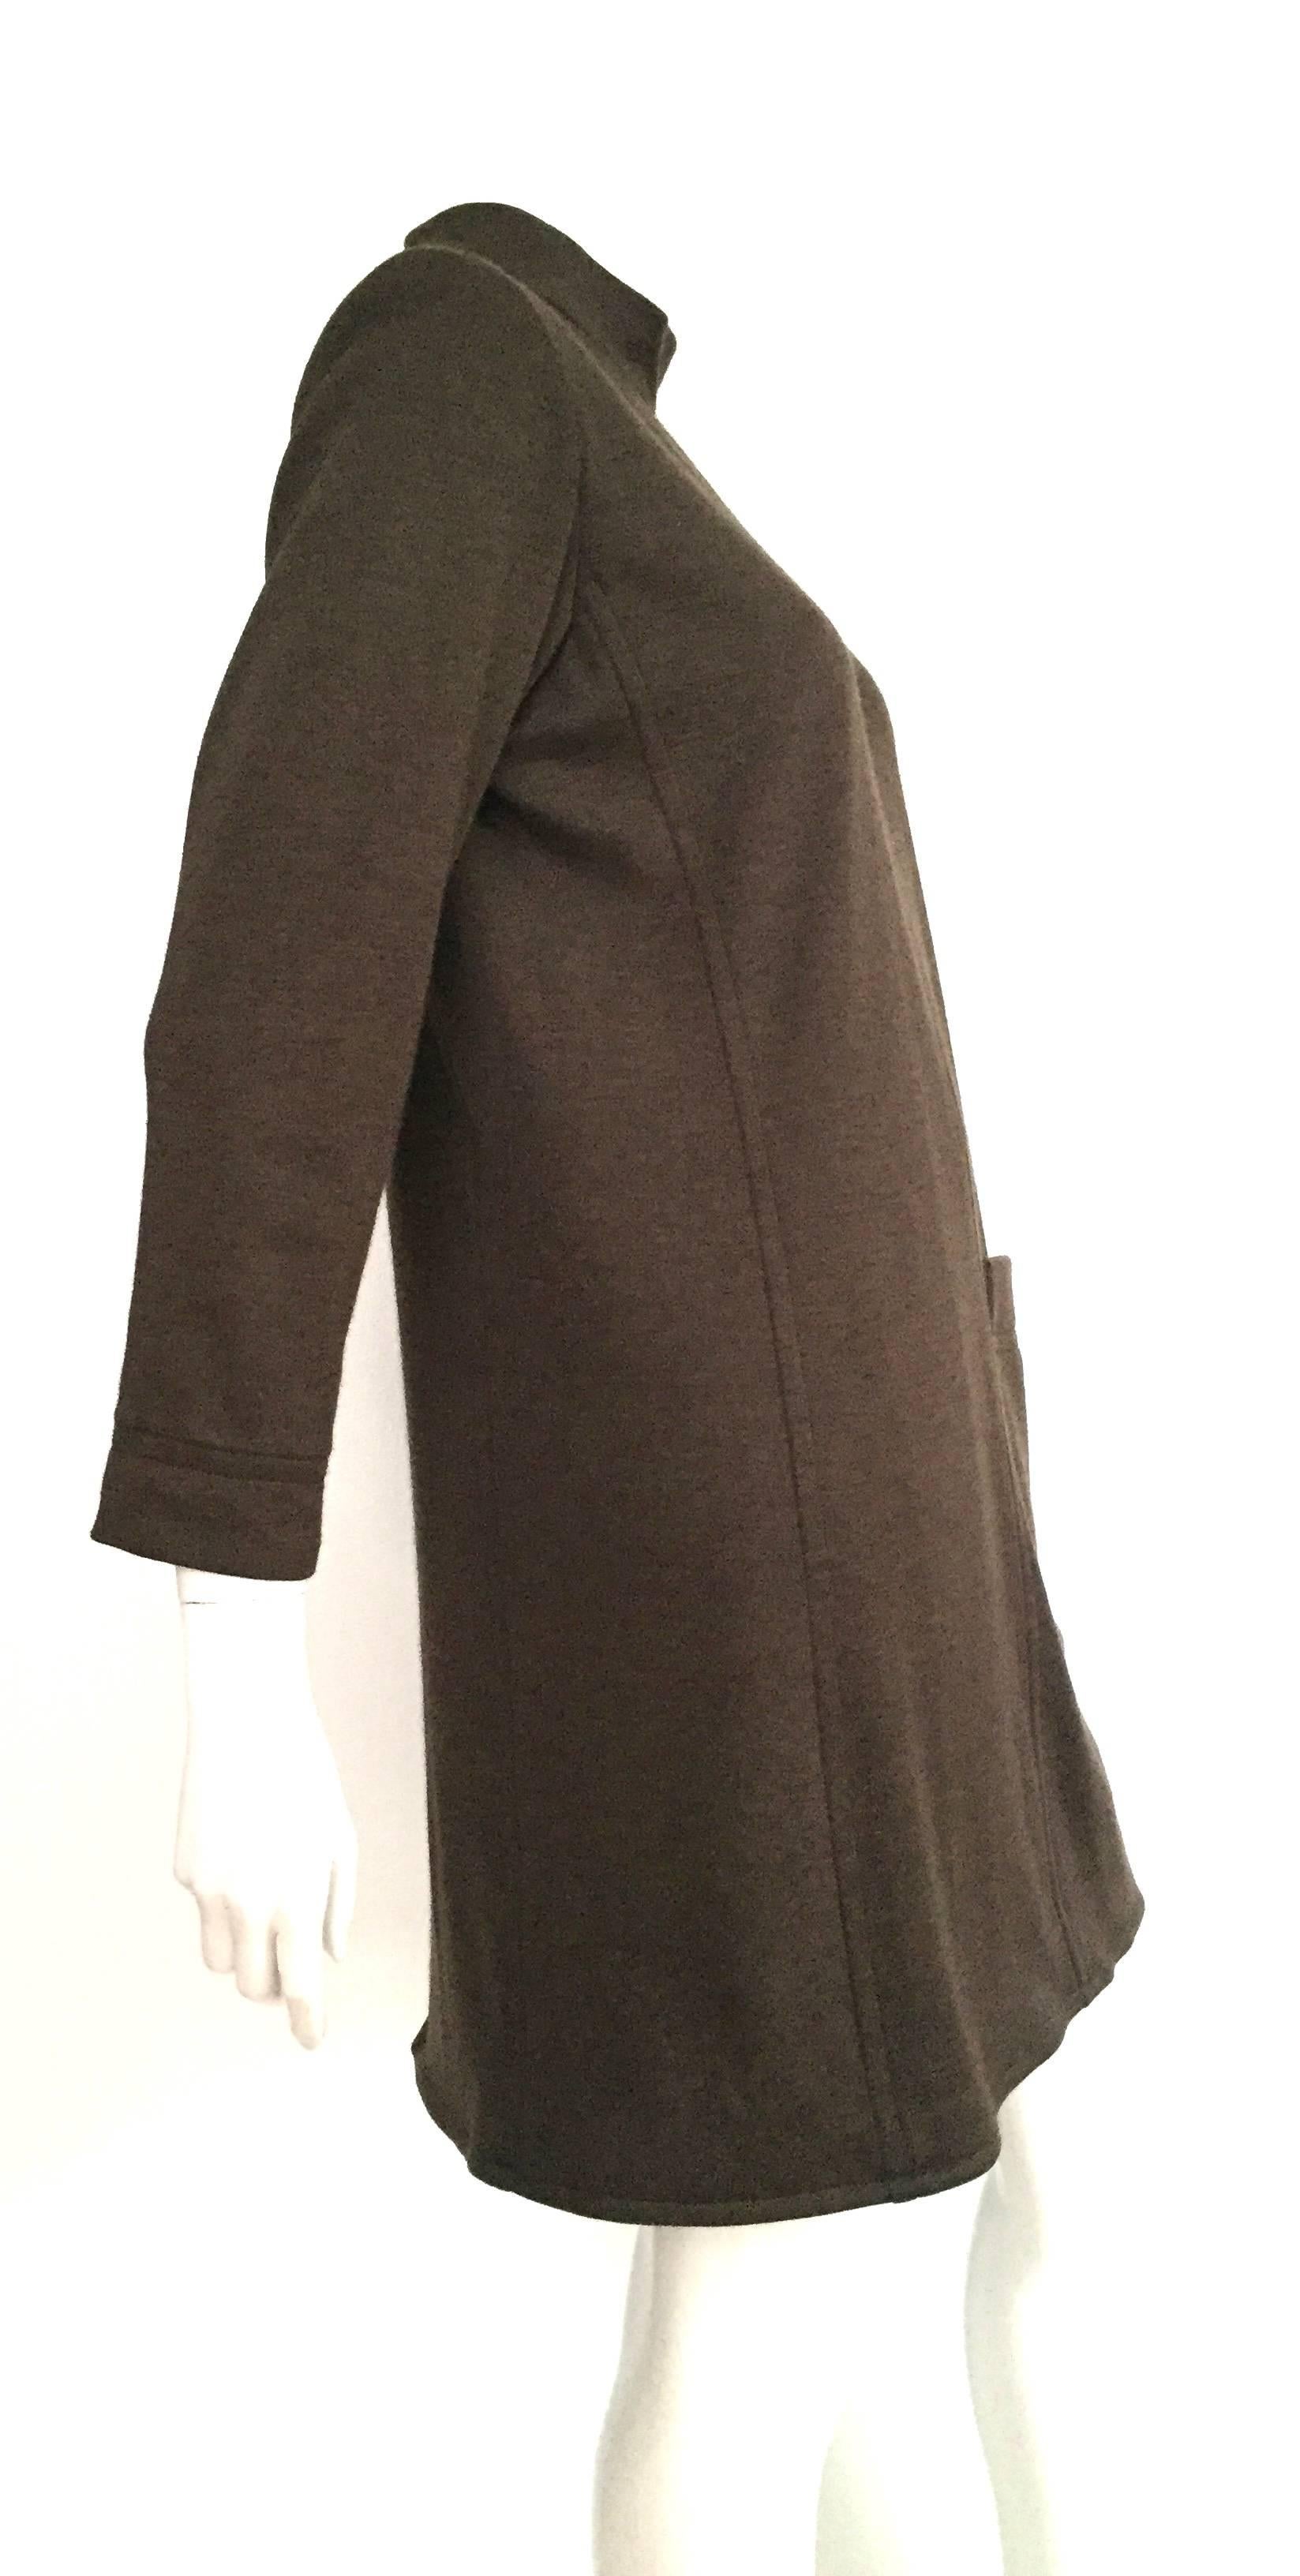 Yves Saint Laurent Rive Gauche Size 6 - 8 Cashmere Olive MOD Dress, 1990s  For Sale 1